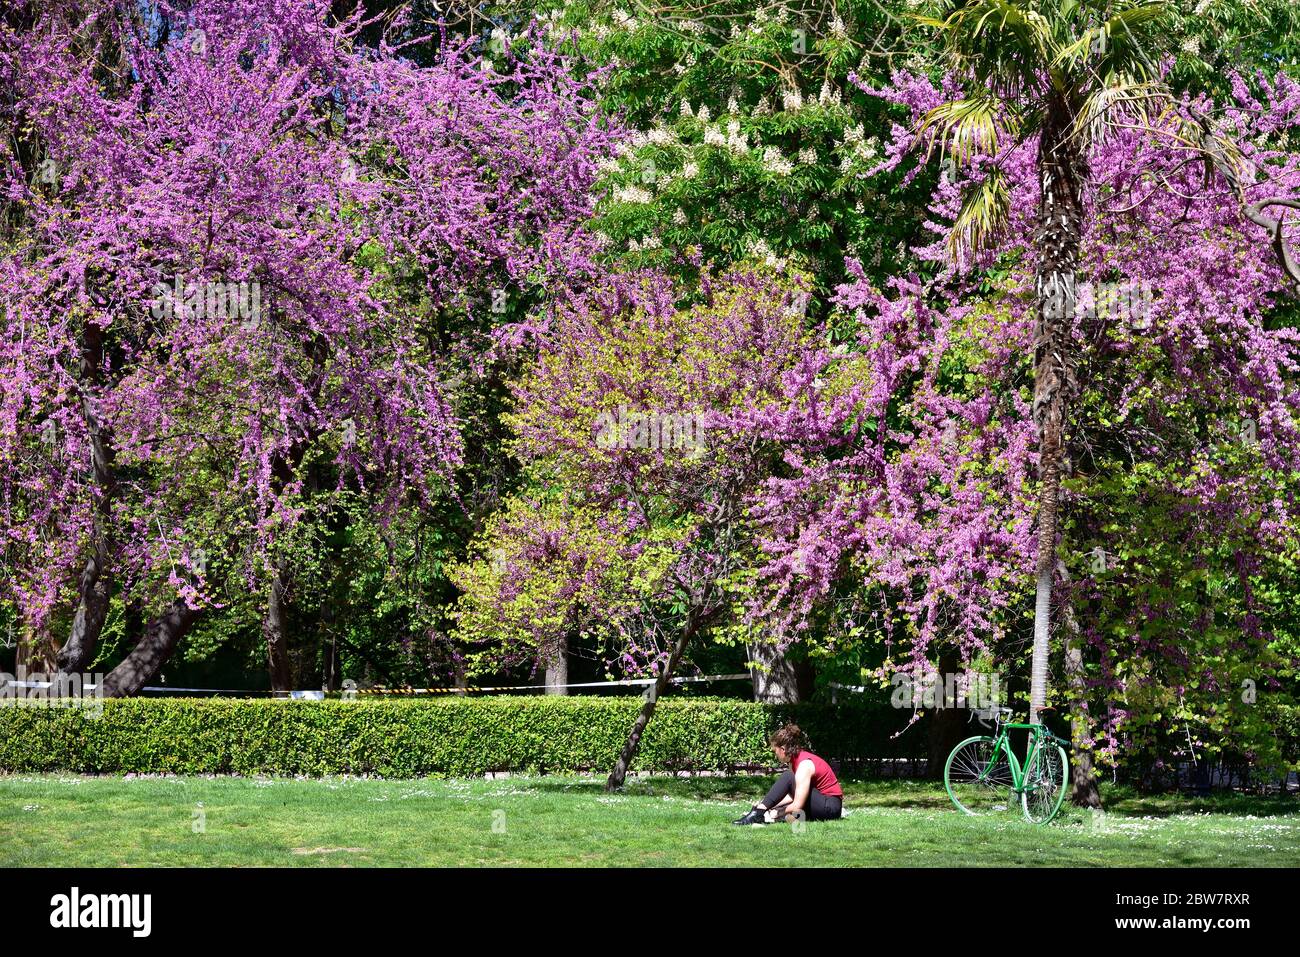 MADRID / ESPAGNE - 12 AVRIL 2019 - une jeune femme lit des livres sous un beau arbre en fleurs dans les jardins publics de la bonne retraite (Jardines del Buen Banque D'Images